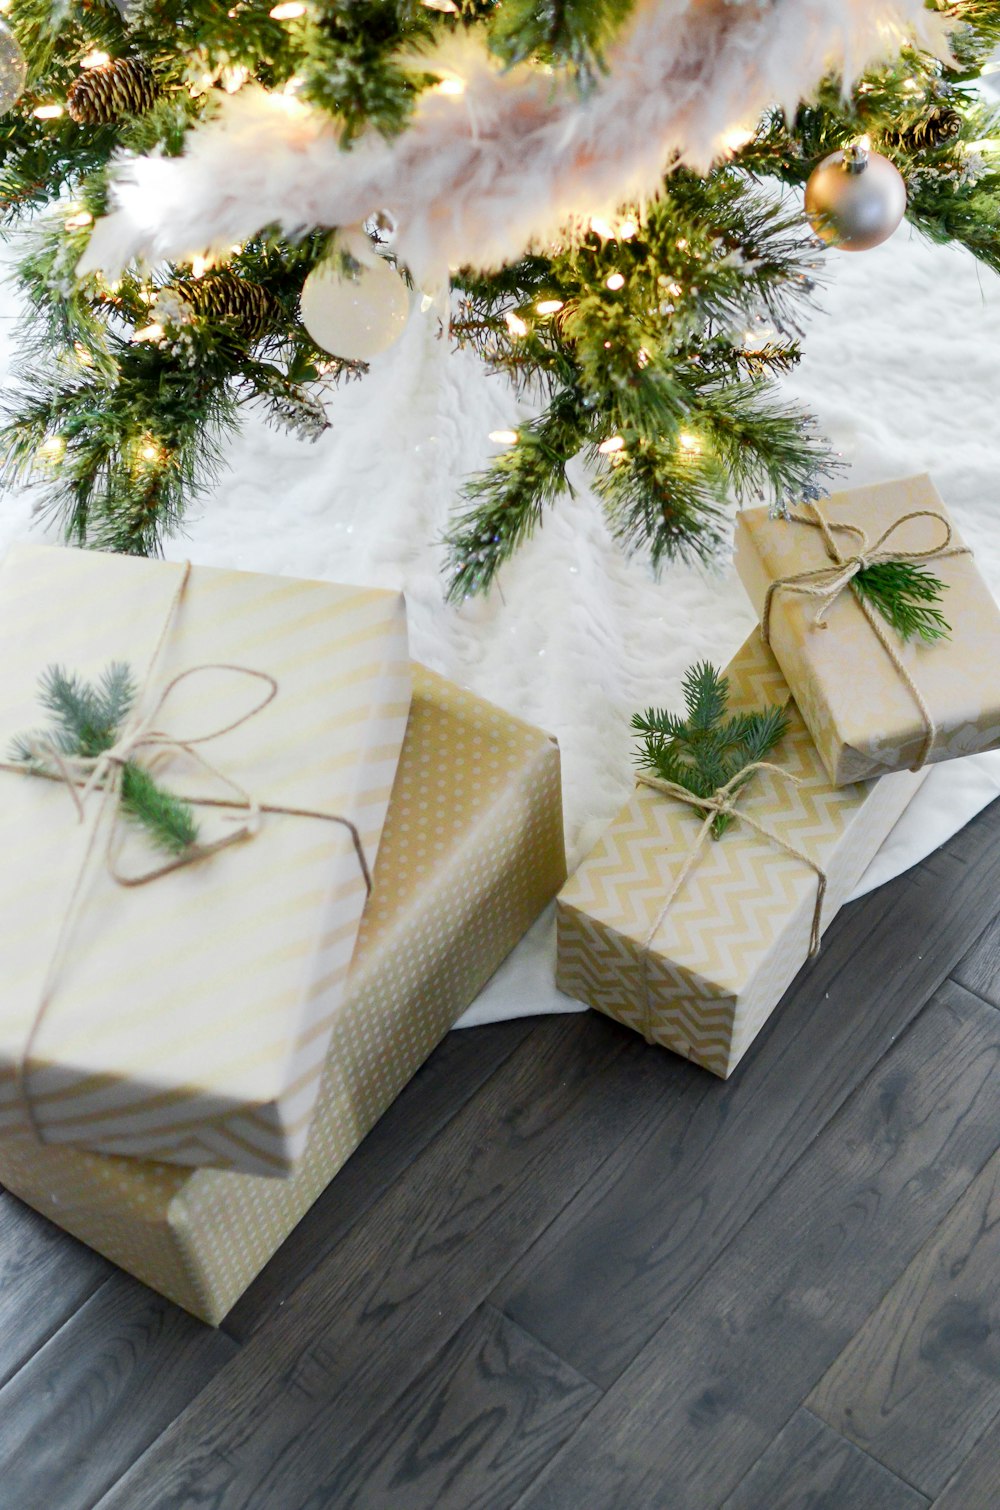 cuatro cajas de regalo debajo del árbol de Navidad